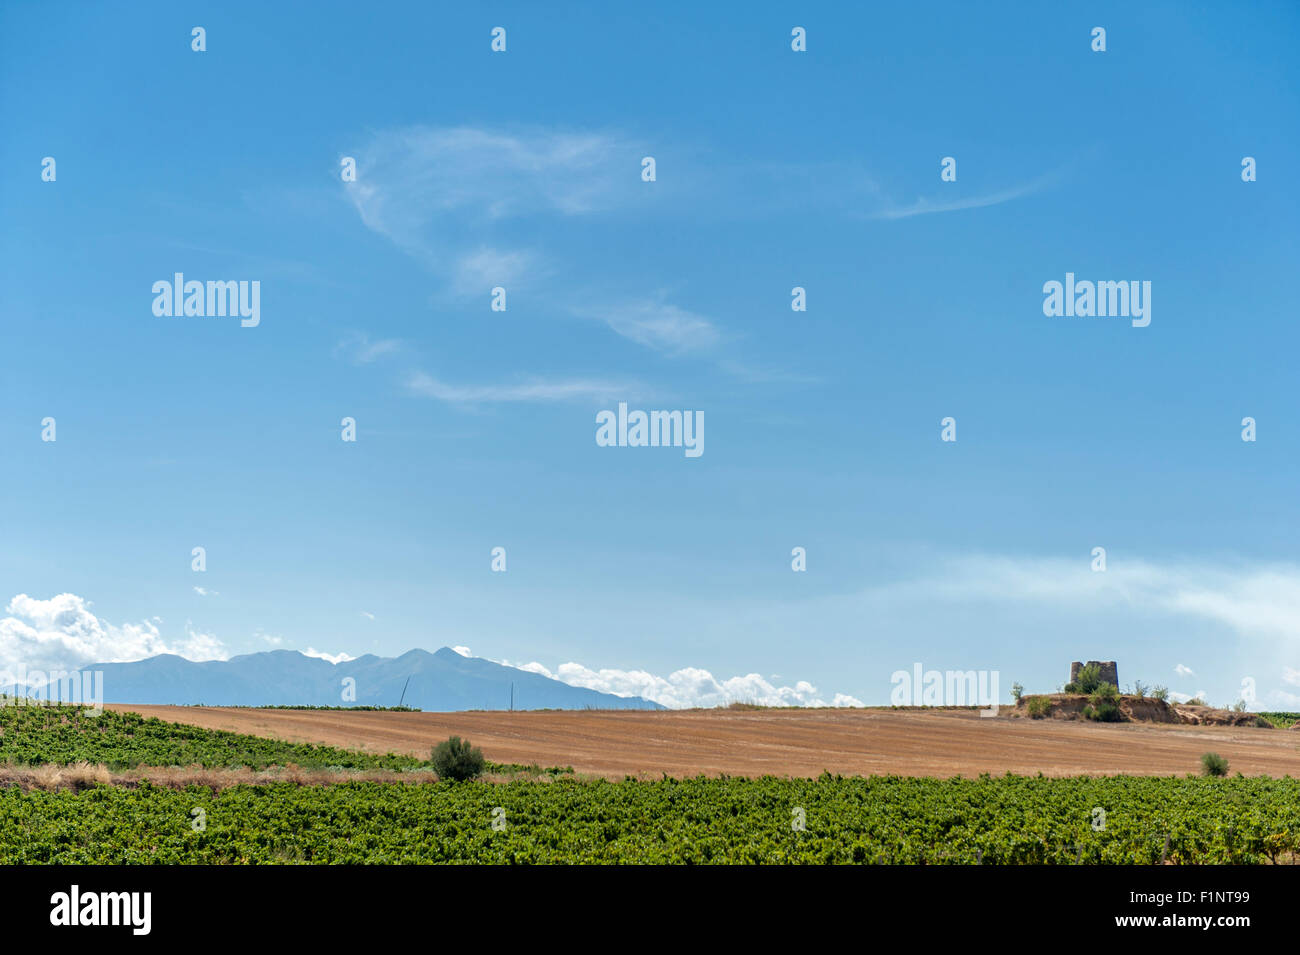 Vue sur les Albères montagnes de Baixas, un petit village viticole dans les Pyrénées-Orientales, près de Perpignan, France Banque D'Images